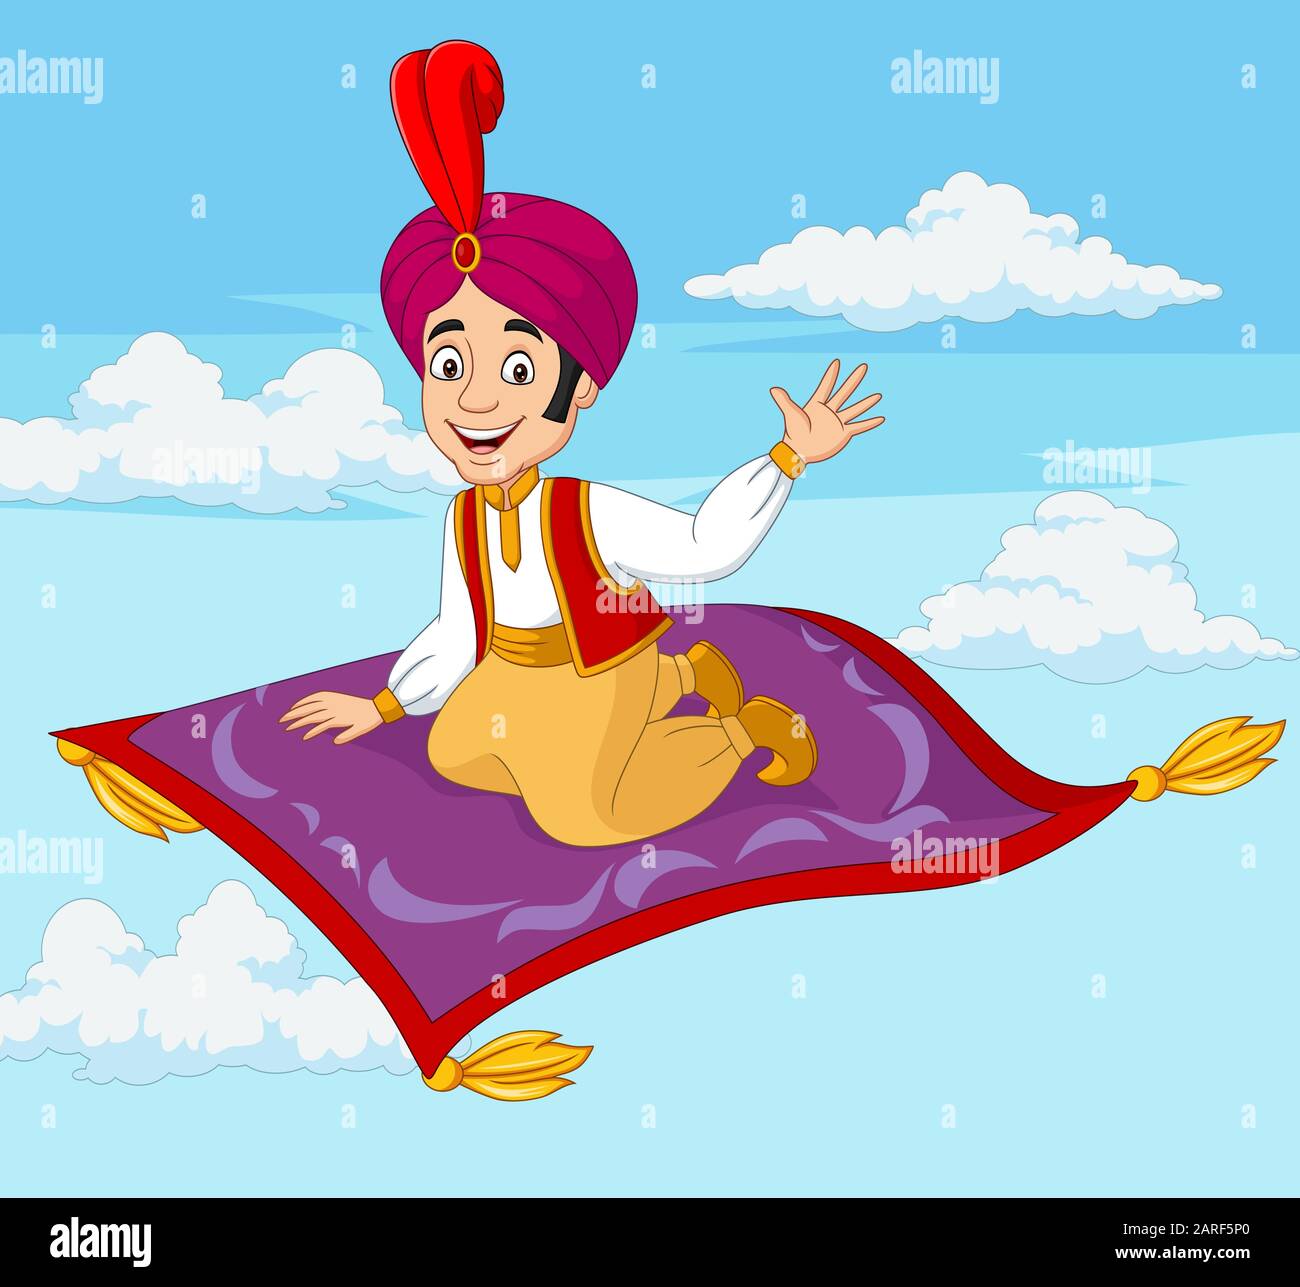 Cartoon aladdin Reisen auf fliegenden Teppich Stock-Vektorgrafik - Alamy